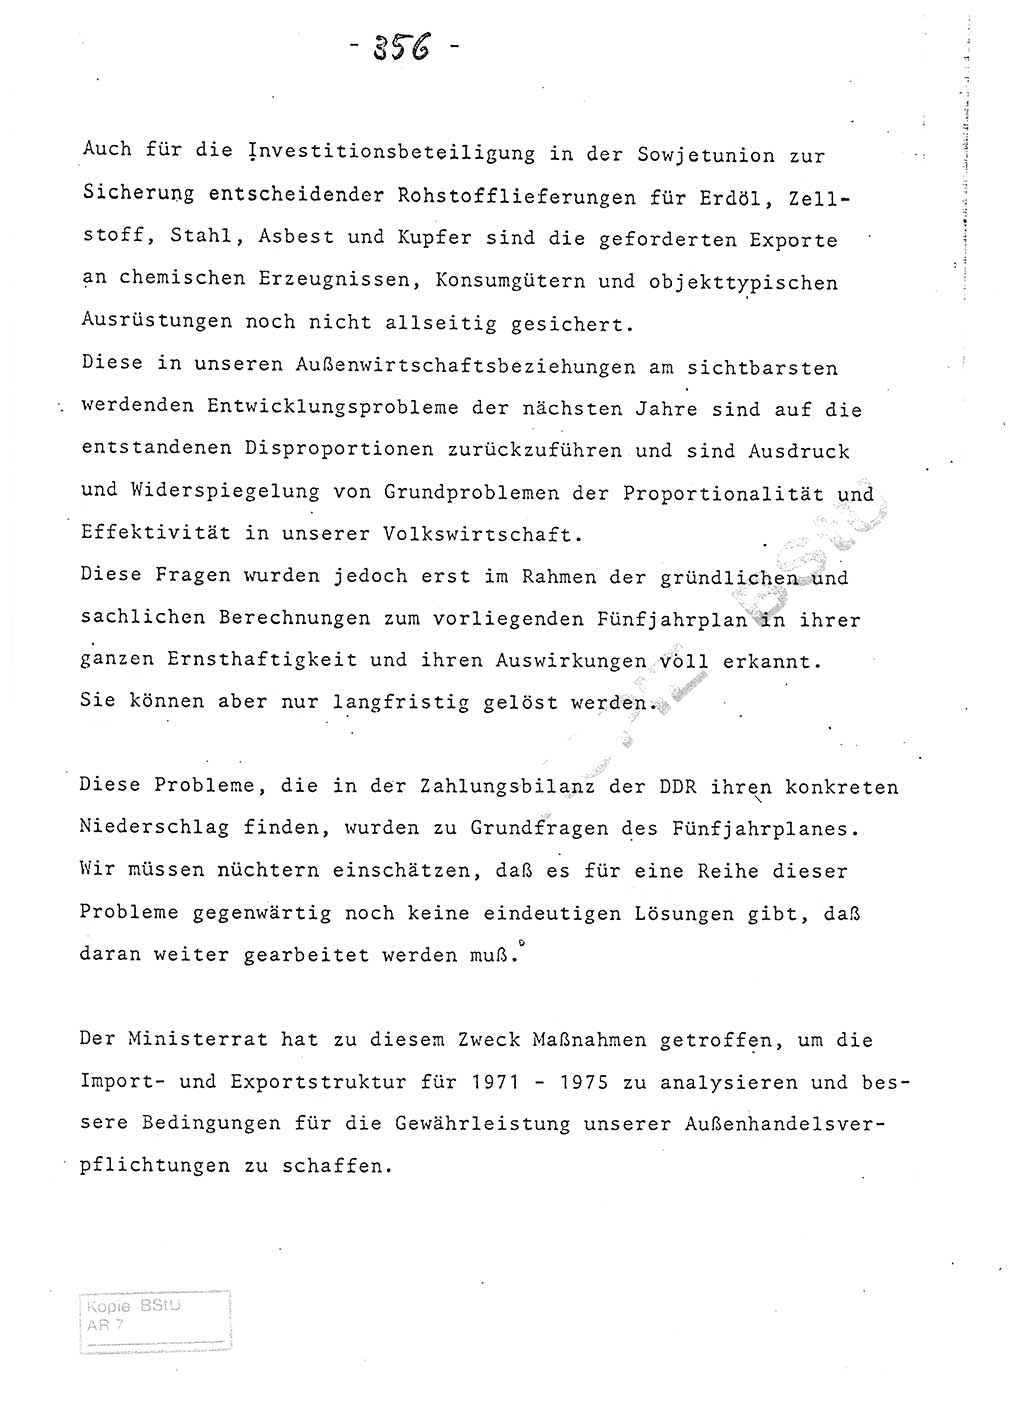 Referat (Entwurf) des Genossen Minister (Generaloberst Erich Mielke) auf der Dienstkonferenz 1972, Ministerium für Staatssicherheit (MfS) [Deutsche Demokratische Republik (DDR)], Der Minister, Geheime Verschlußsache (GVS) 008-150/72, Berlin 25.2.1972, Seite 356 (Ref. Entw. DK MfS DDR Min. GVS 008-150/72 1972, S. 356)